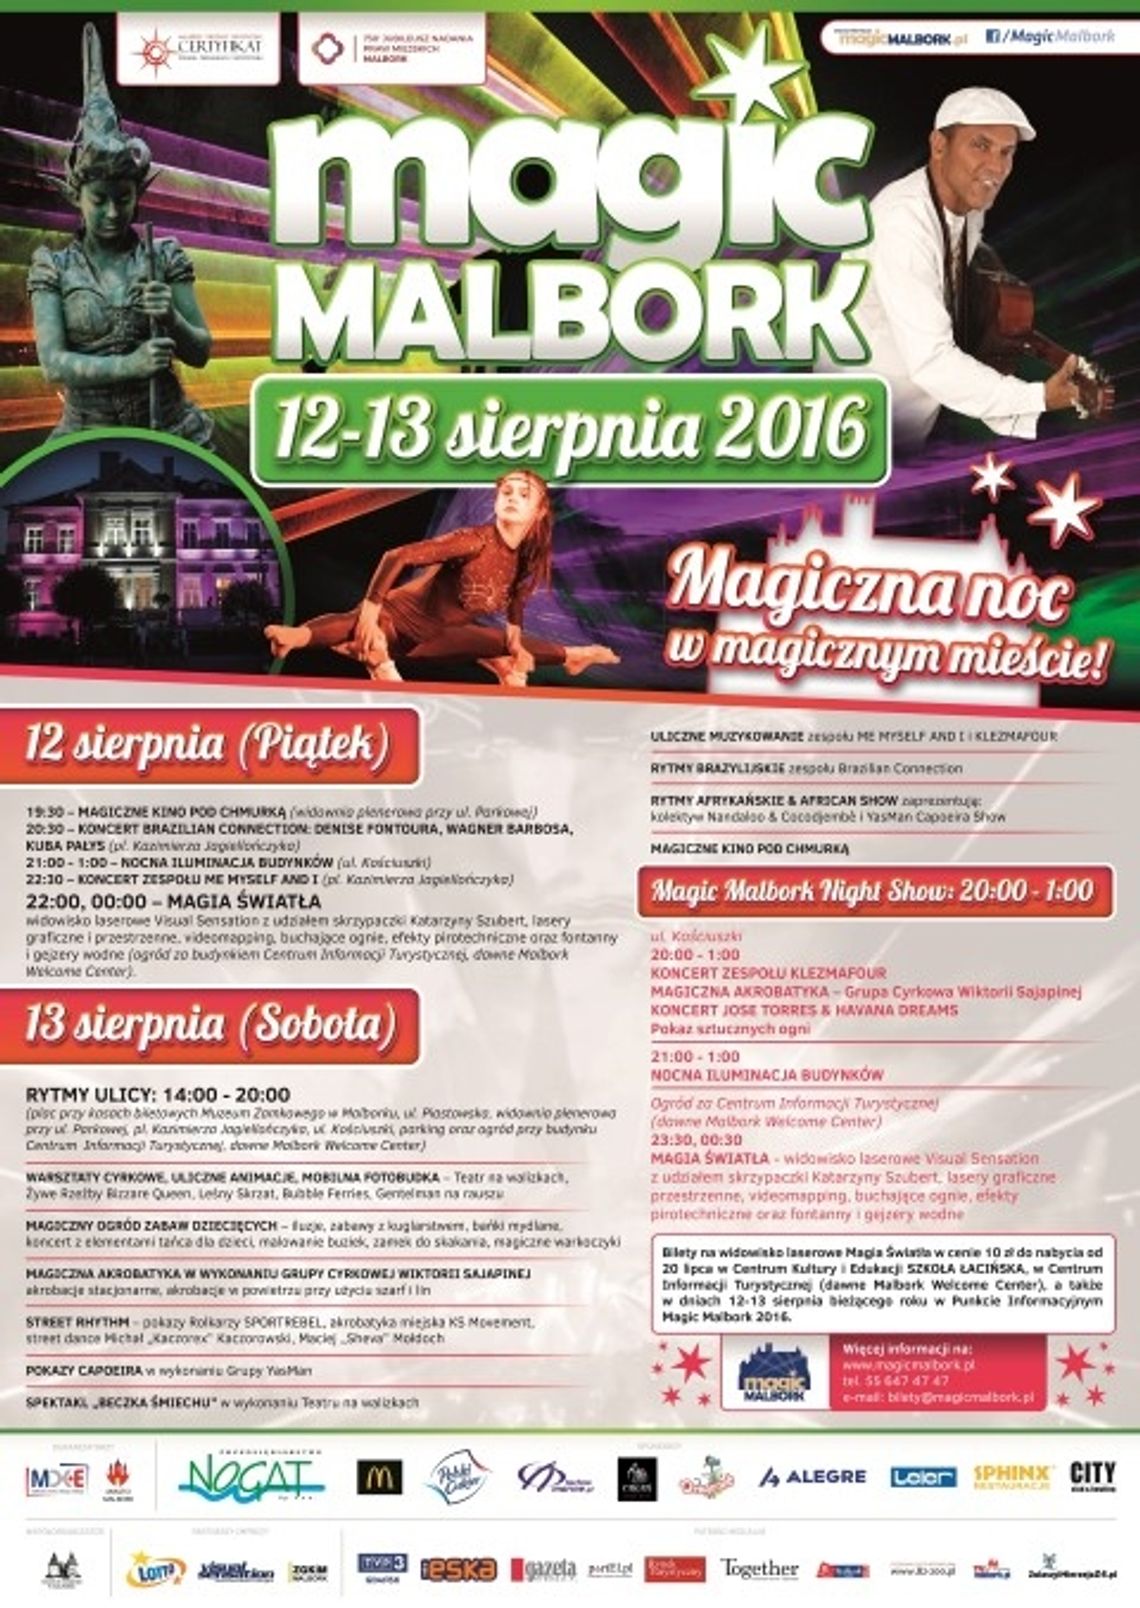 Magic Malbork 12-13 sierpnia